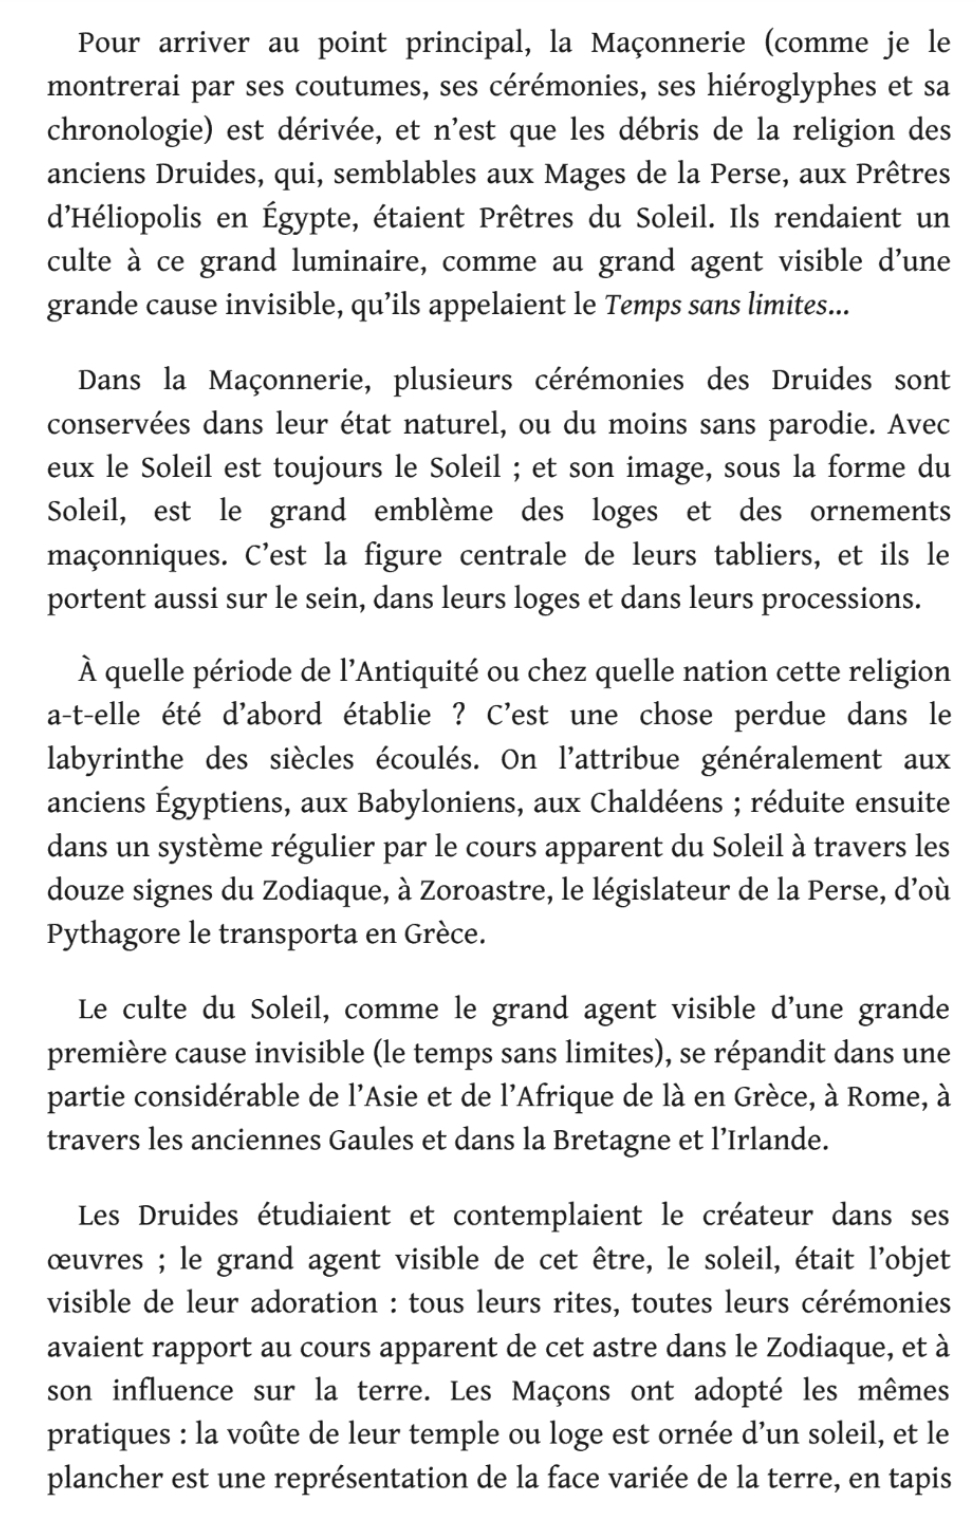 La franc-maçonnerie, la Gnose et le gnosticisme.  - Page 3 Scree341